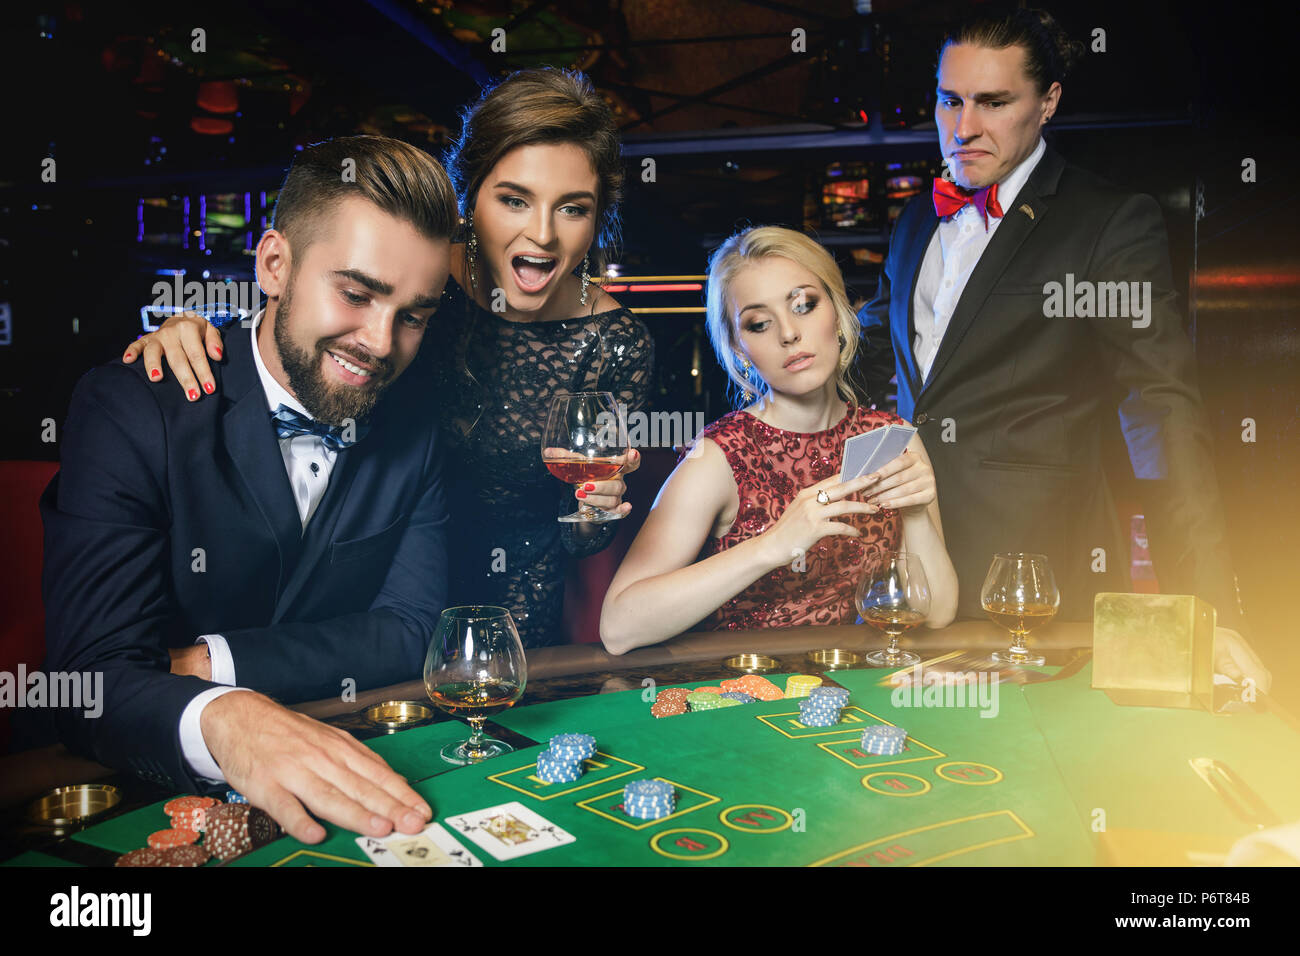 Les perdants et les gagnants. Groupe de riches personnes bien habillés joue au poker dans le casino. Concepts de la vie de luxe Banque D'Images